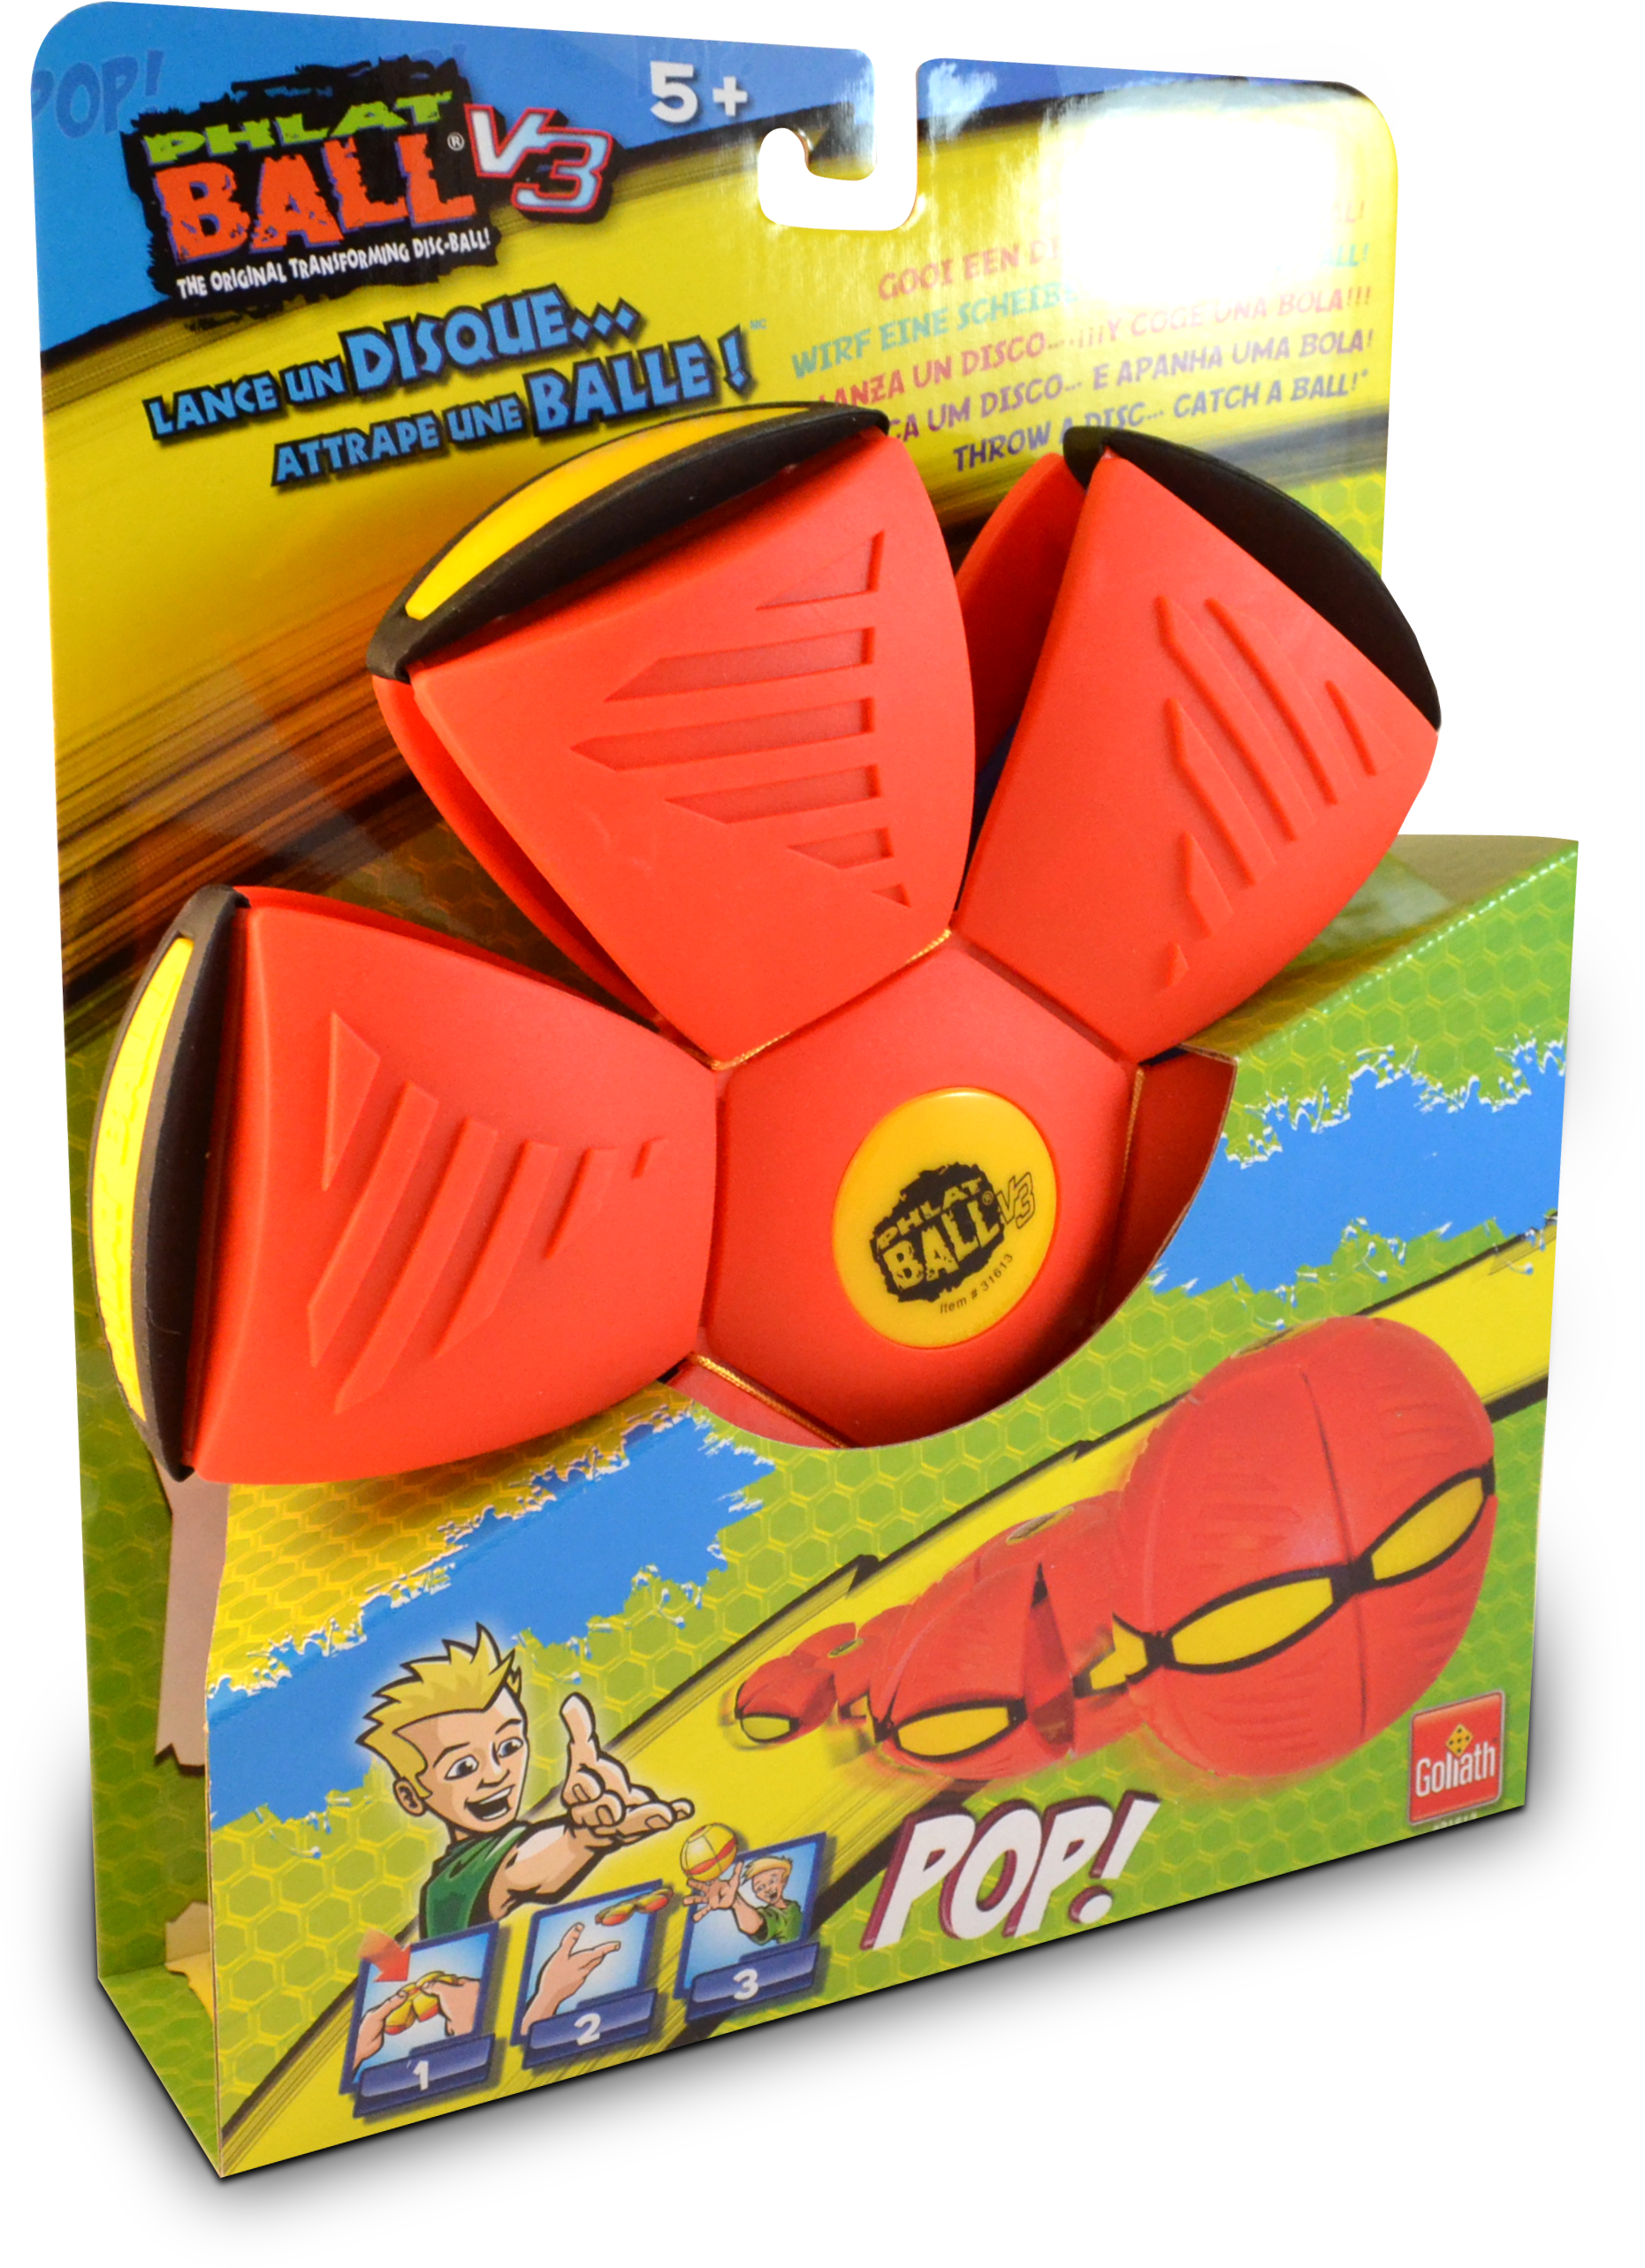 Spellen En Speelgoed - Goliath Phalt Ball (outdoor , Garden Toys , Aiming (4608x3072), Png Download